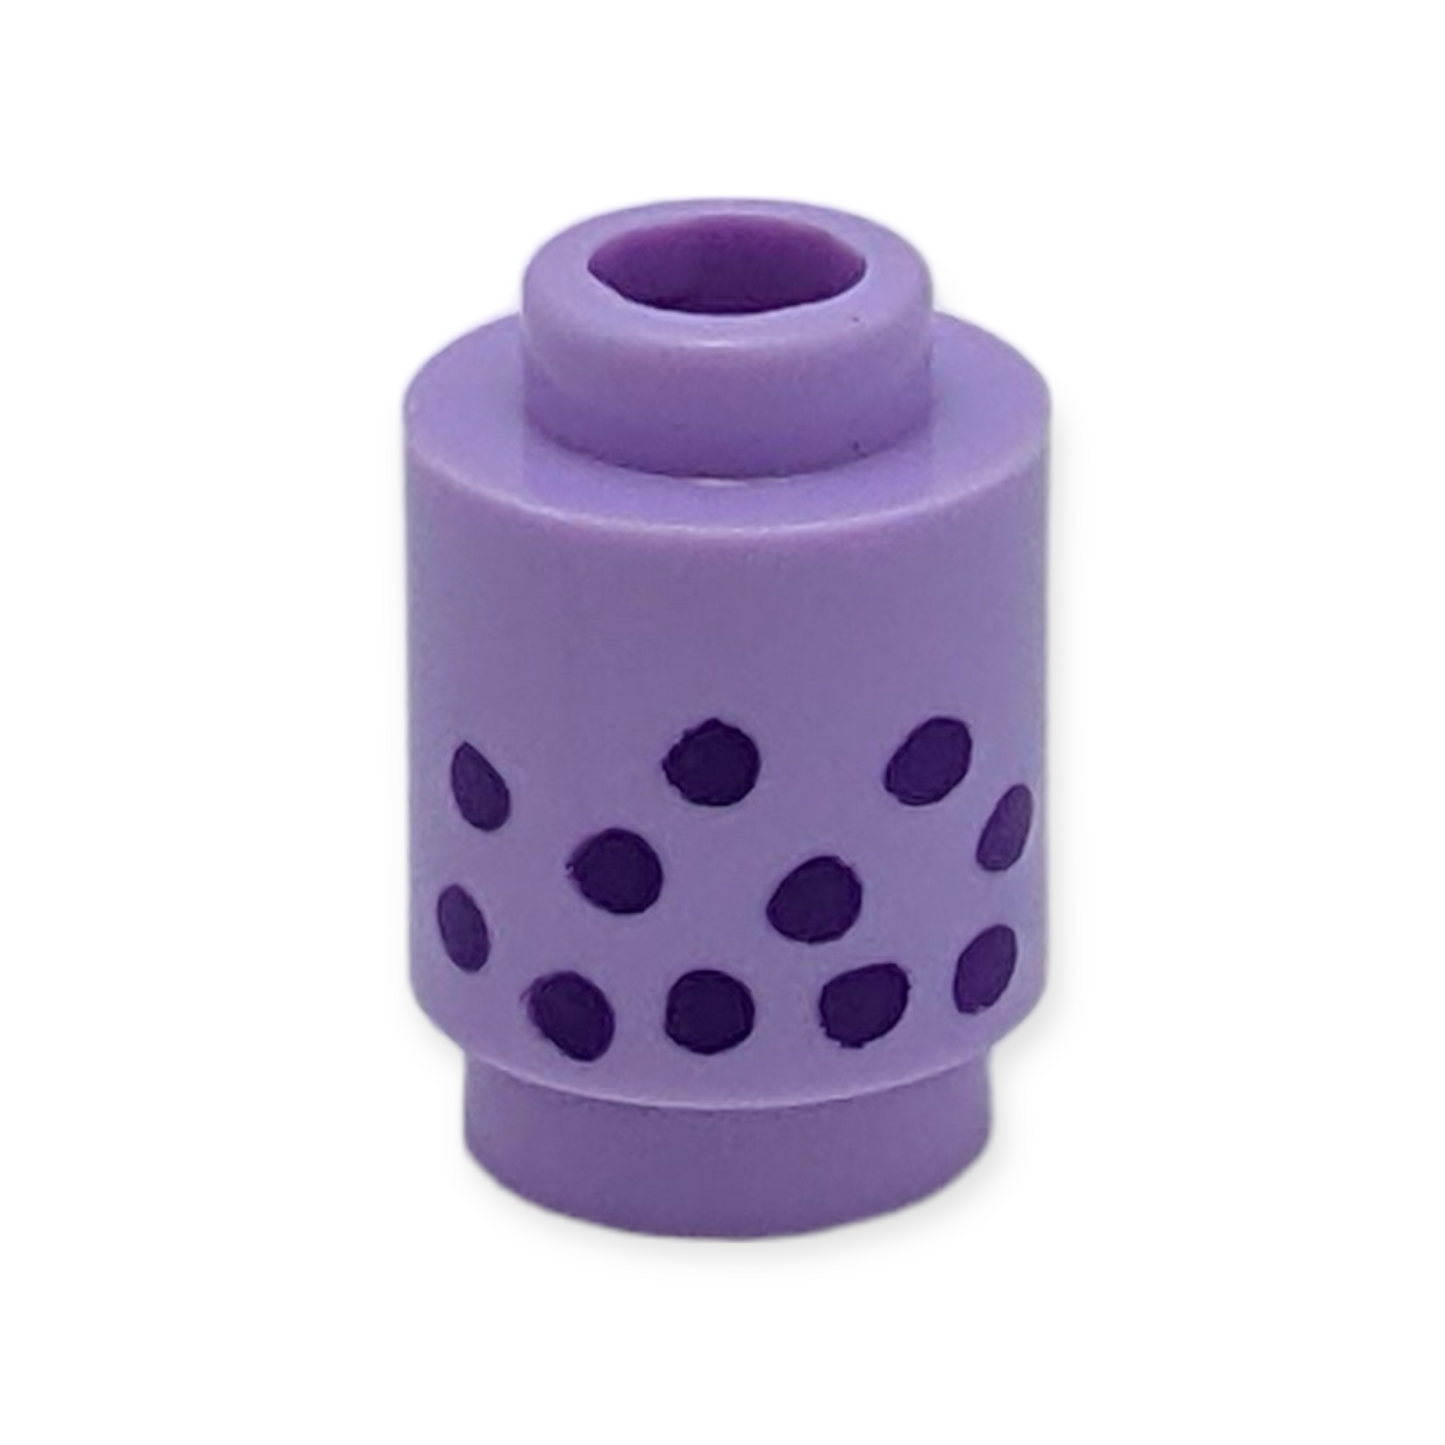 LEGO Brick 1x1 Round - Dark Purple Spots